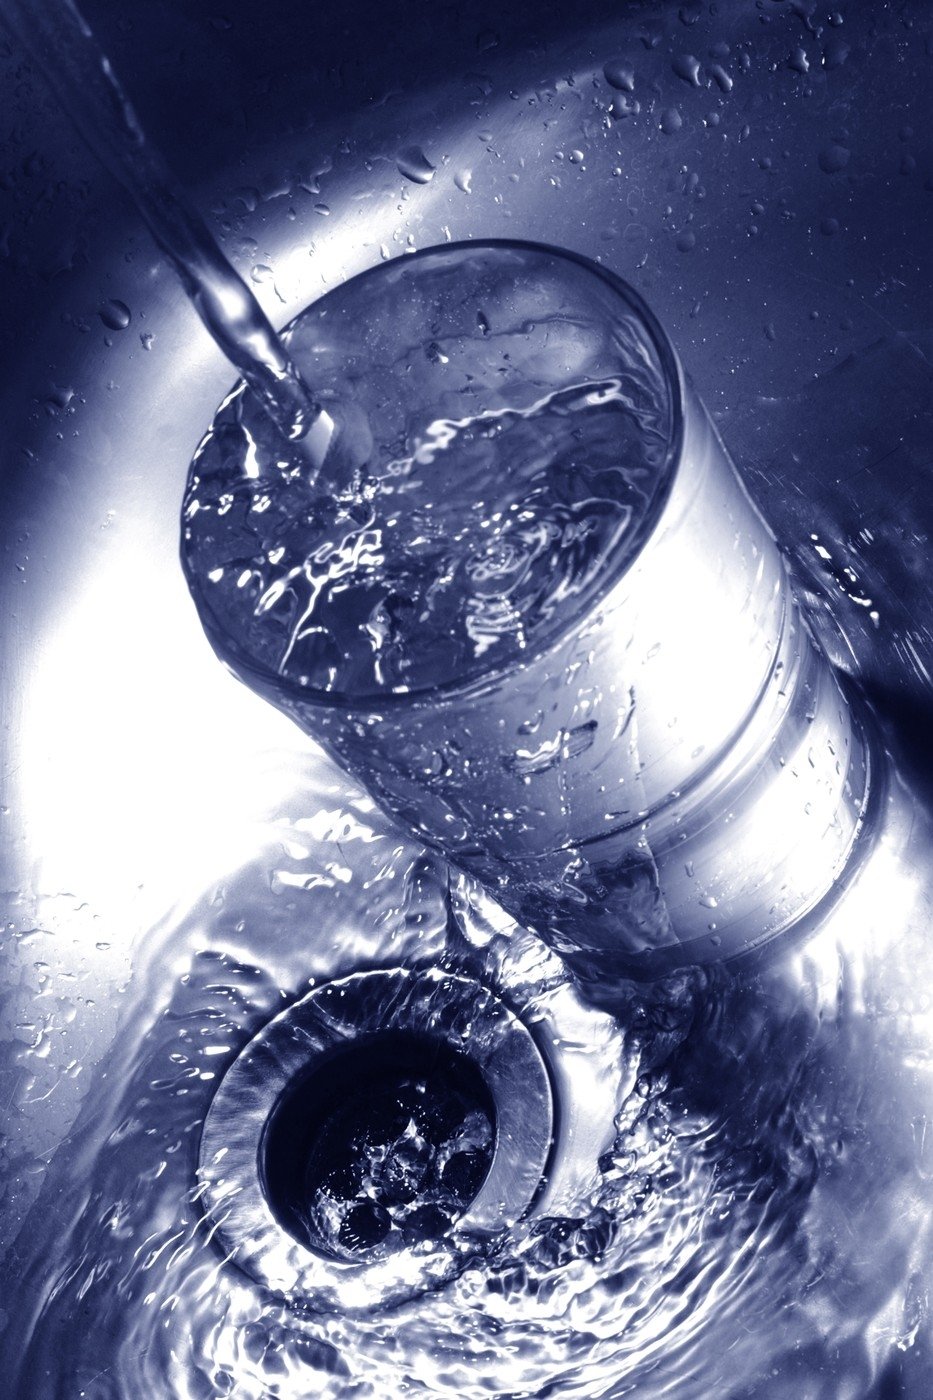 Kdo pije vodu z PET lahví, dostává do těla víc mikroplastů.